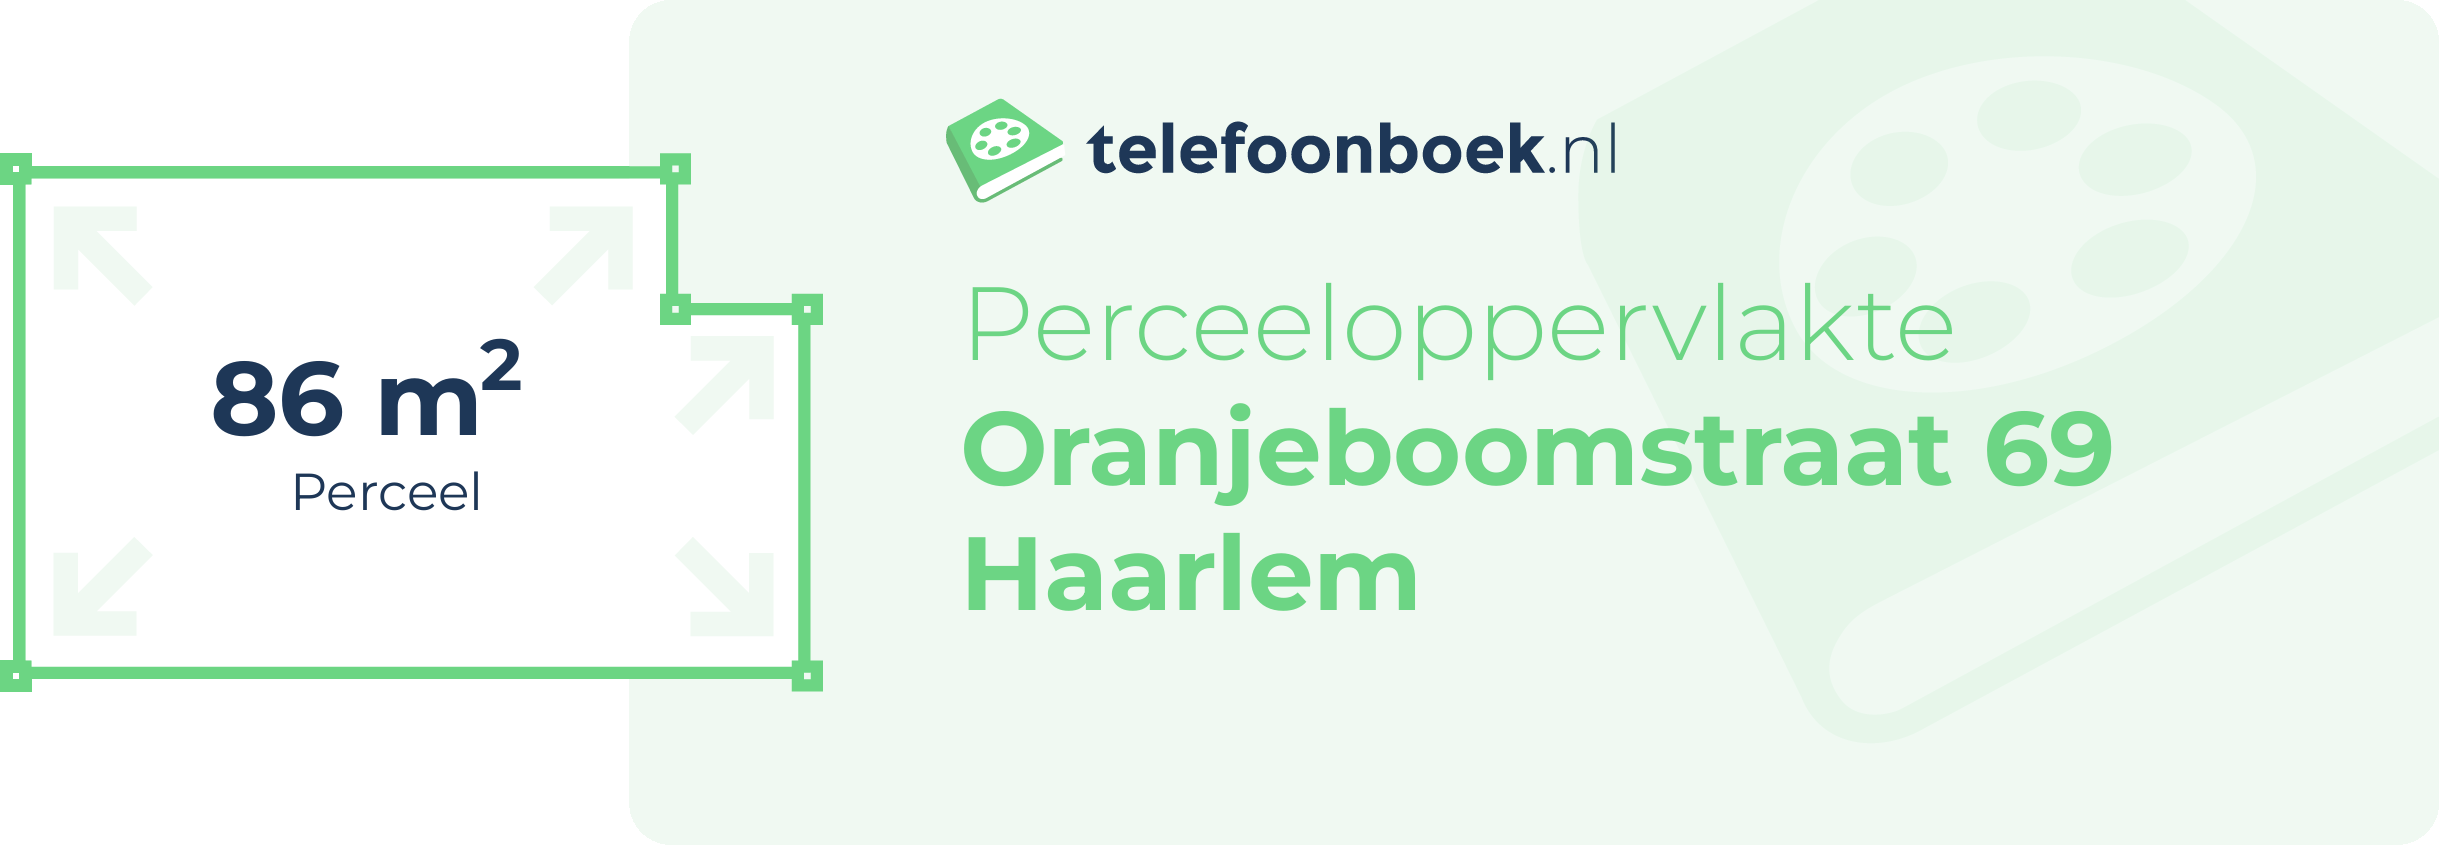 Perceeloppervlakte Oranjeboomstraat 69 Haarlem